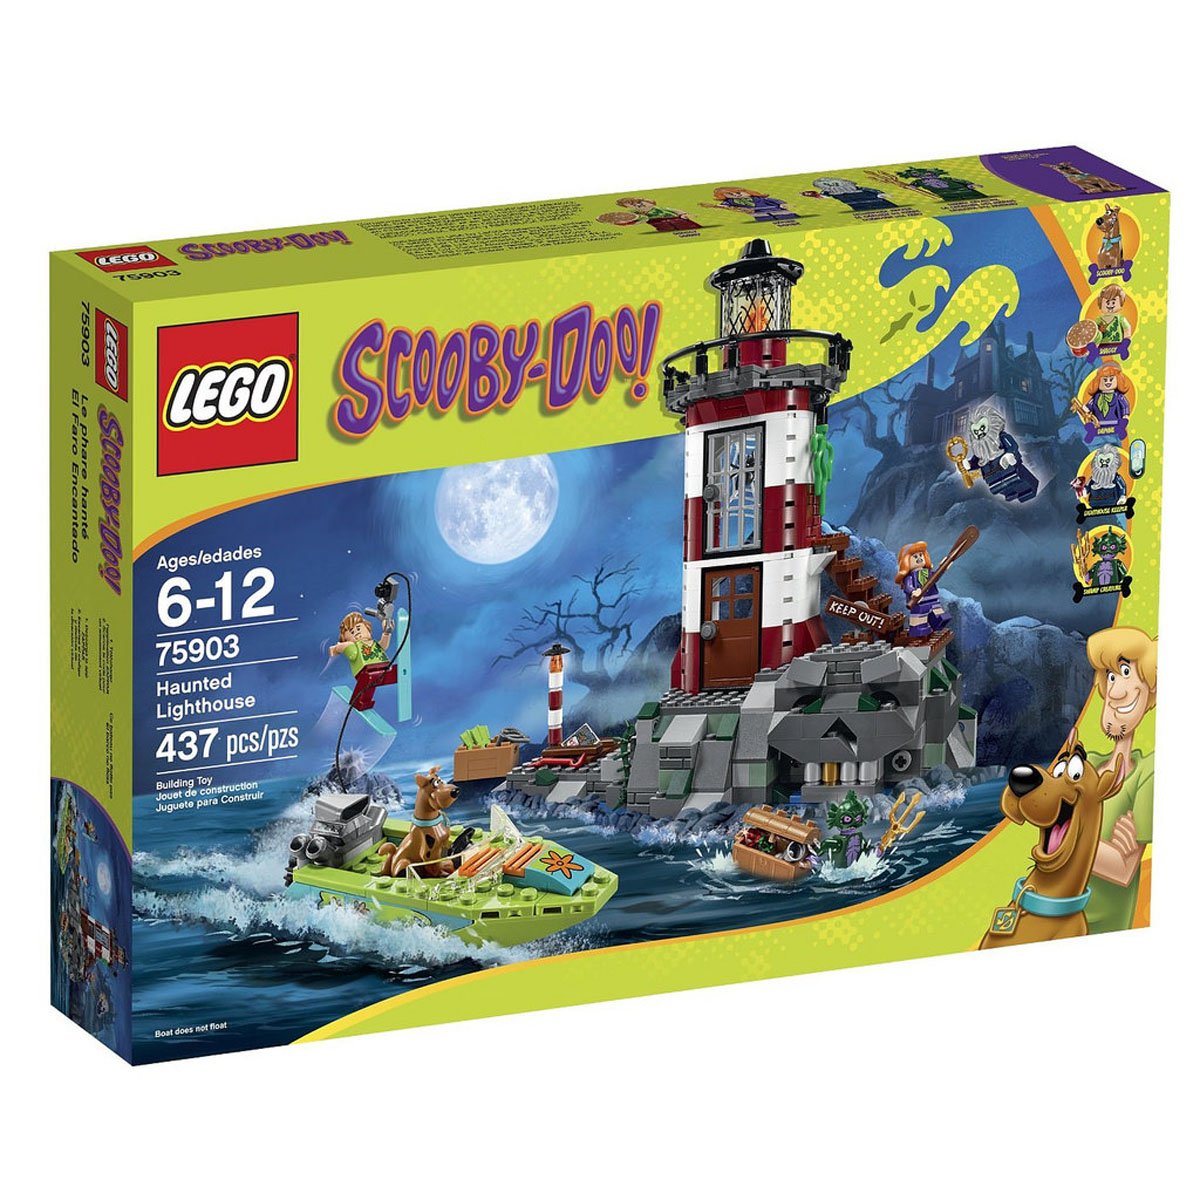 Haunted Lighthouse Lego